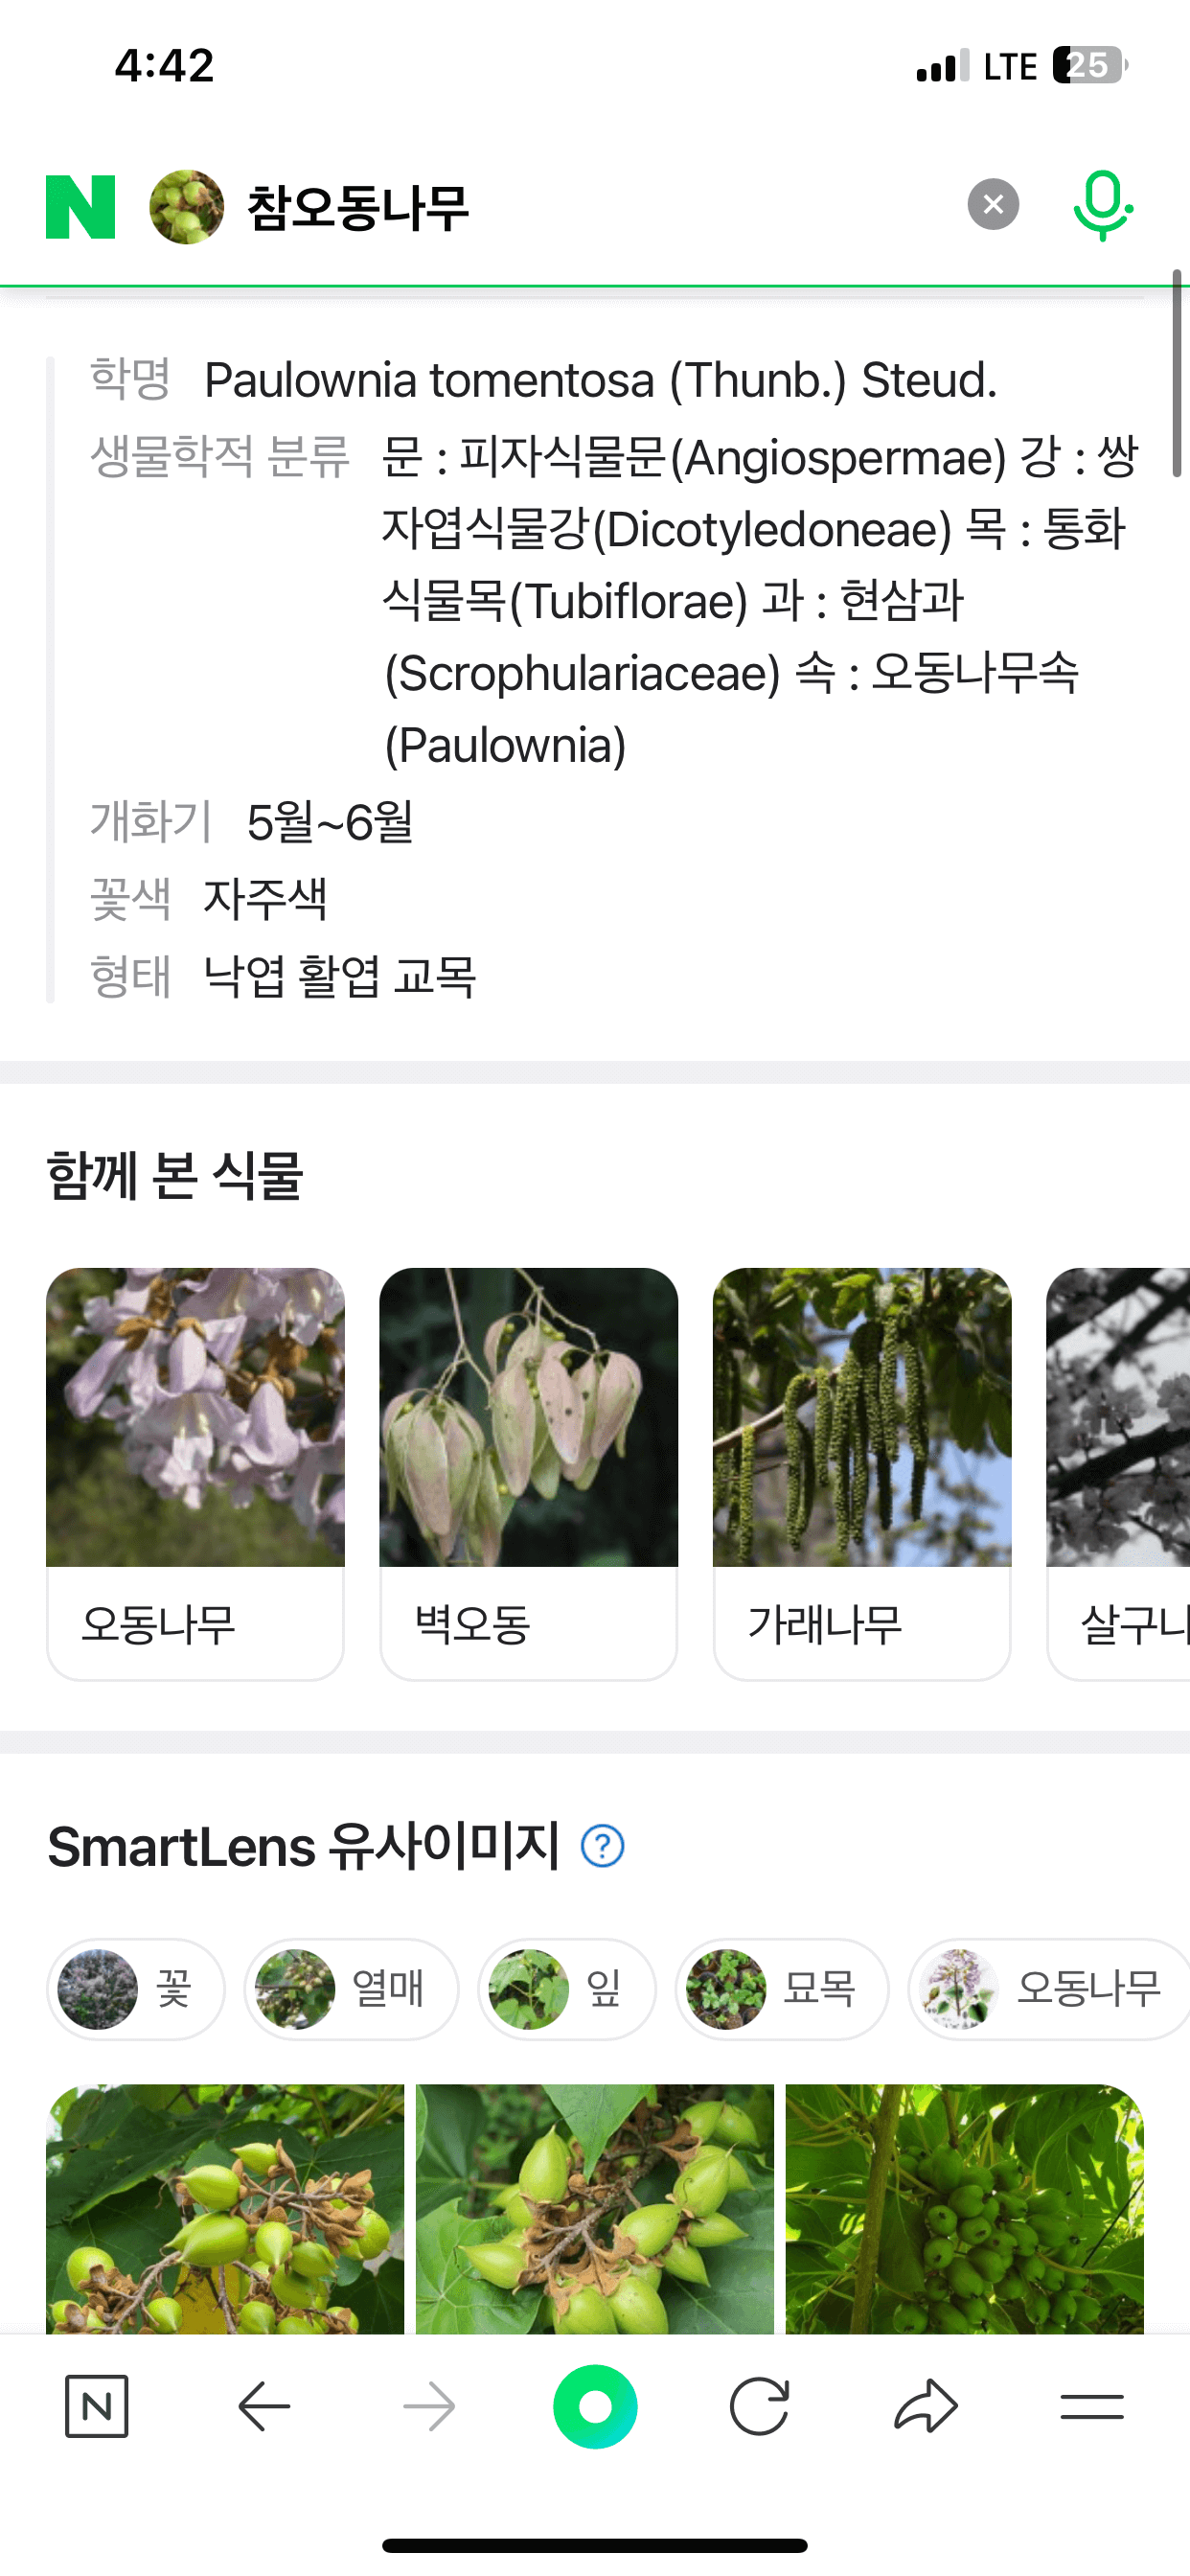 참오동 나무에 대한 상세 정보 - 스마트렌즈 유사 이미지 - 함께 본 식물 정보 나열